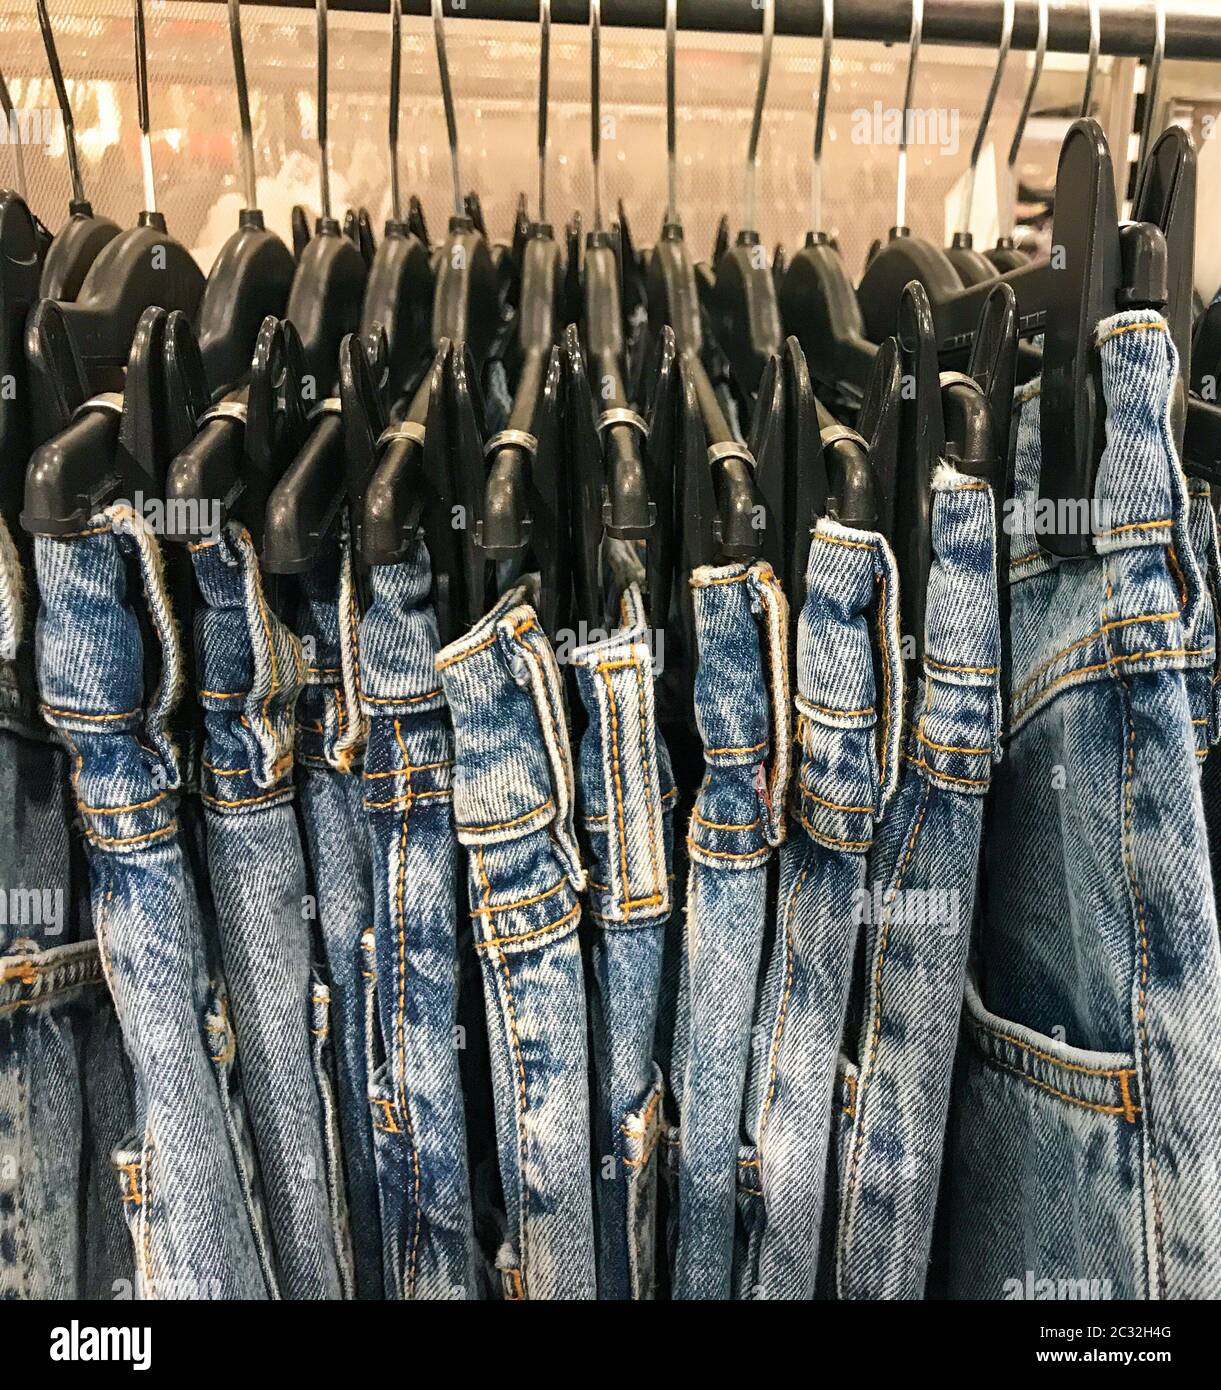 Verschiedene Arten von Jeans in einem nahe gelegenen Geschäft  Stockfotografie - Alamy